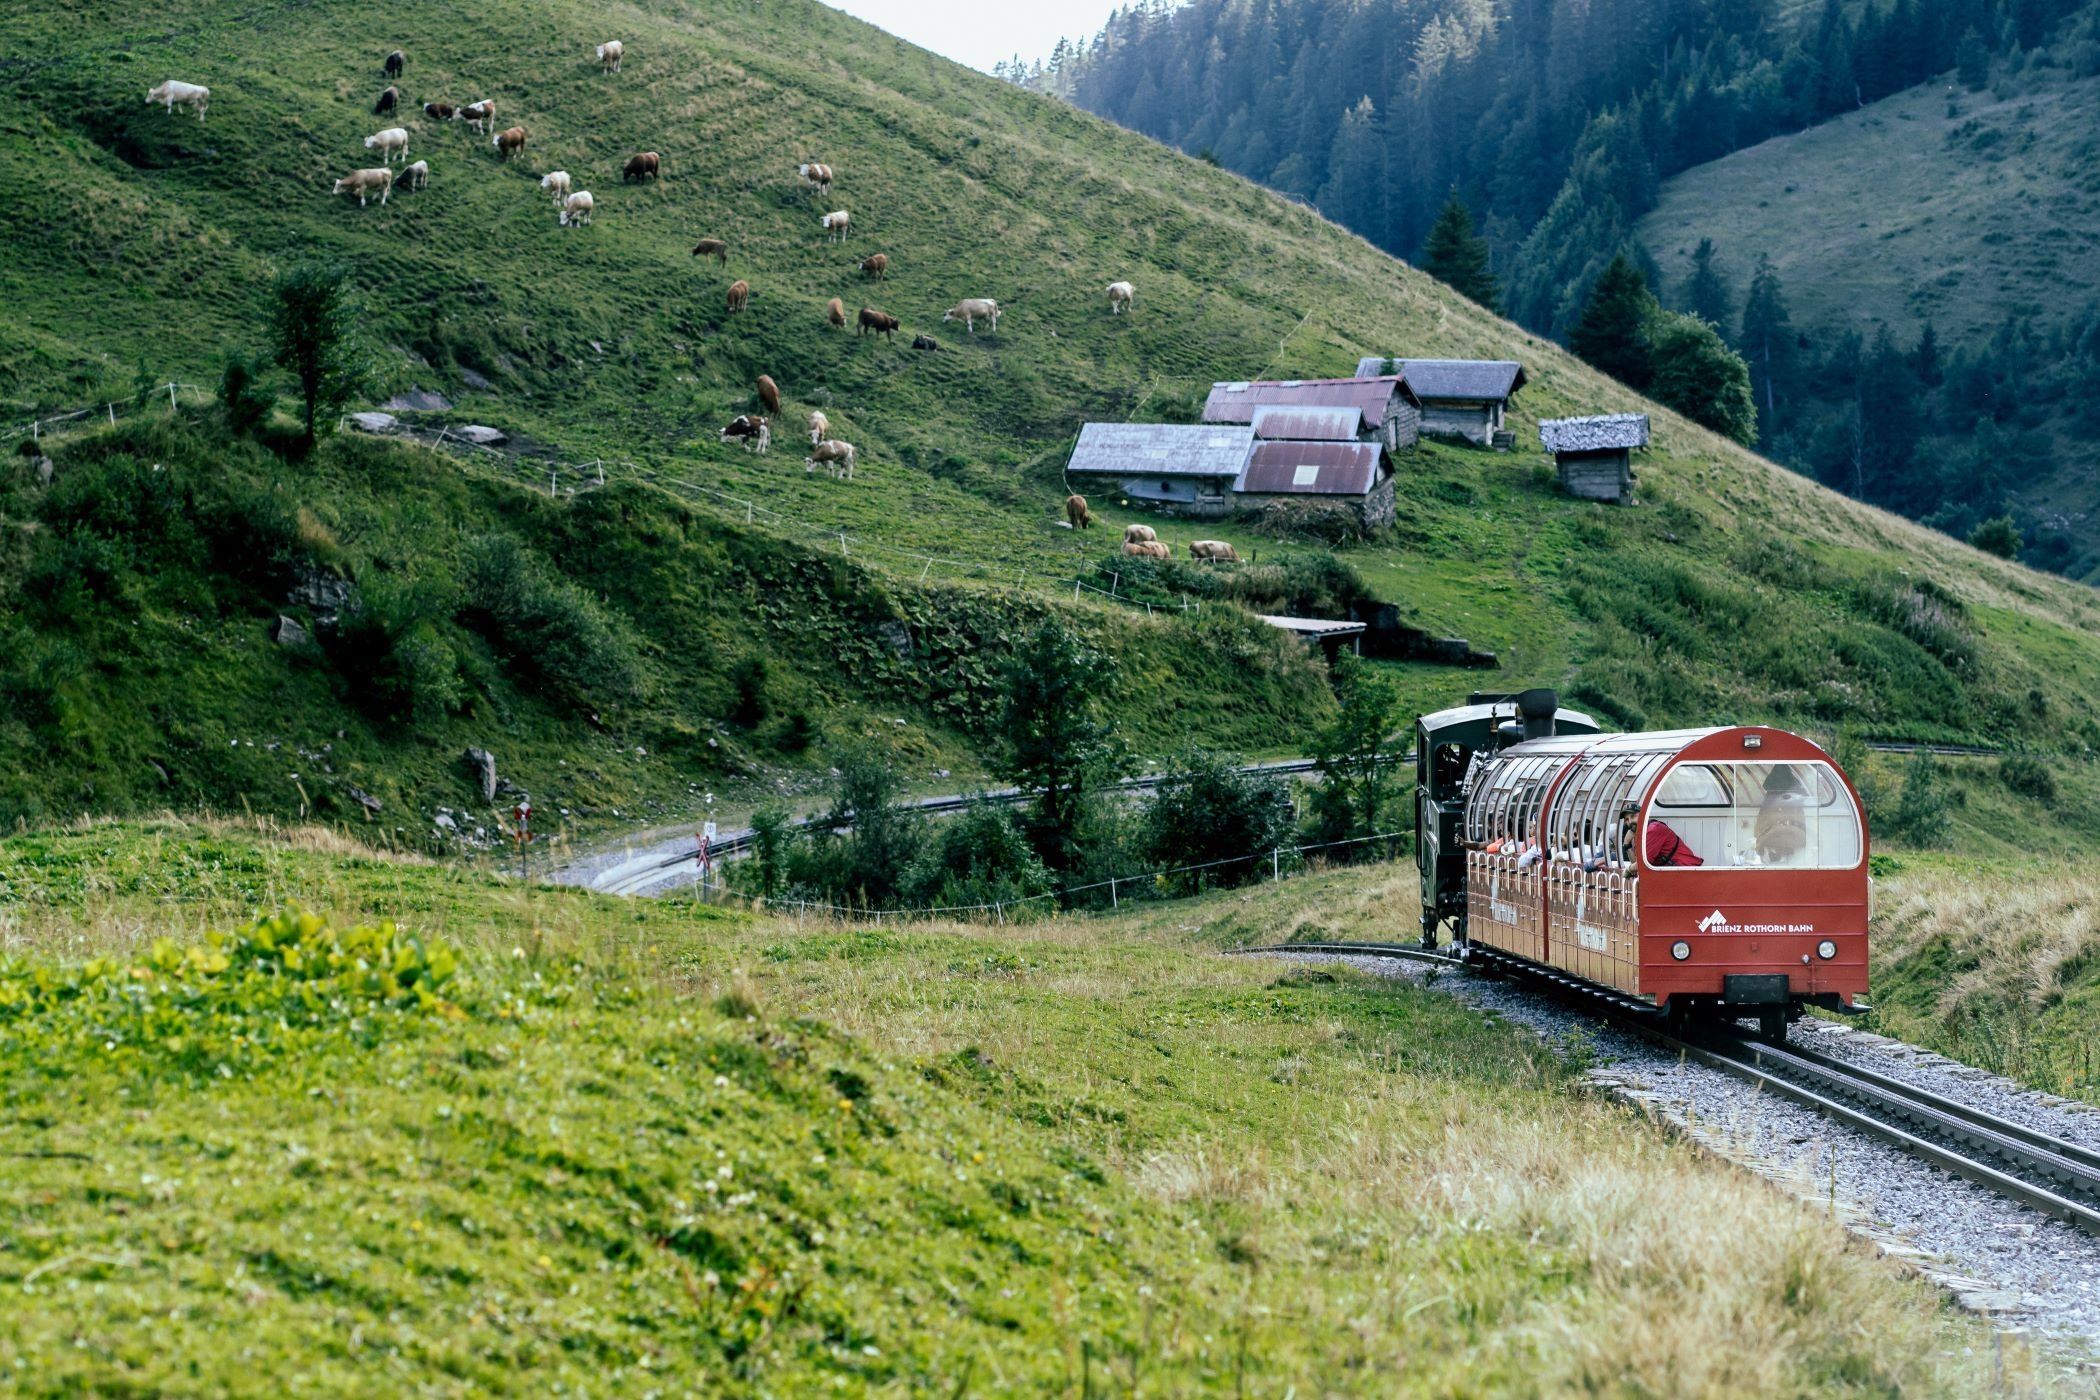 Cận cảnh chuyến tàu hơi nước đưa khách đi chinh phục đỉnh núi 2.300m ở Thụy Sỹ